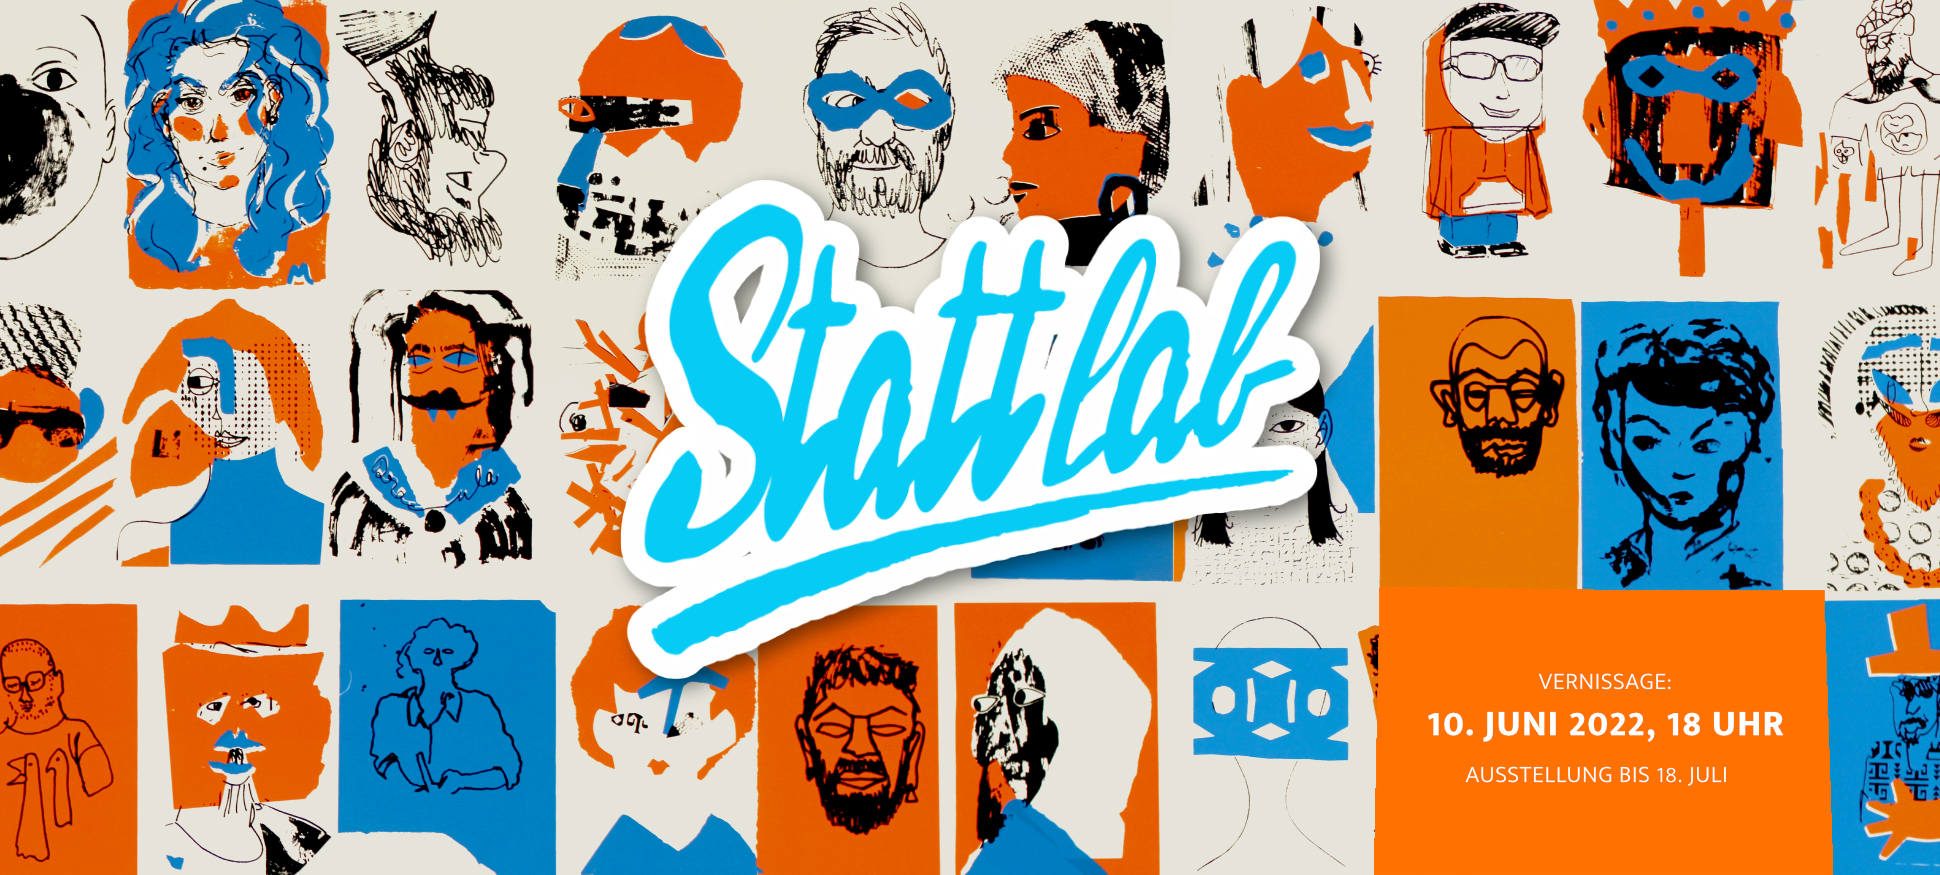 Stattlab-banner-02